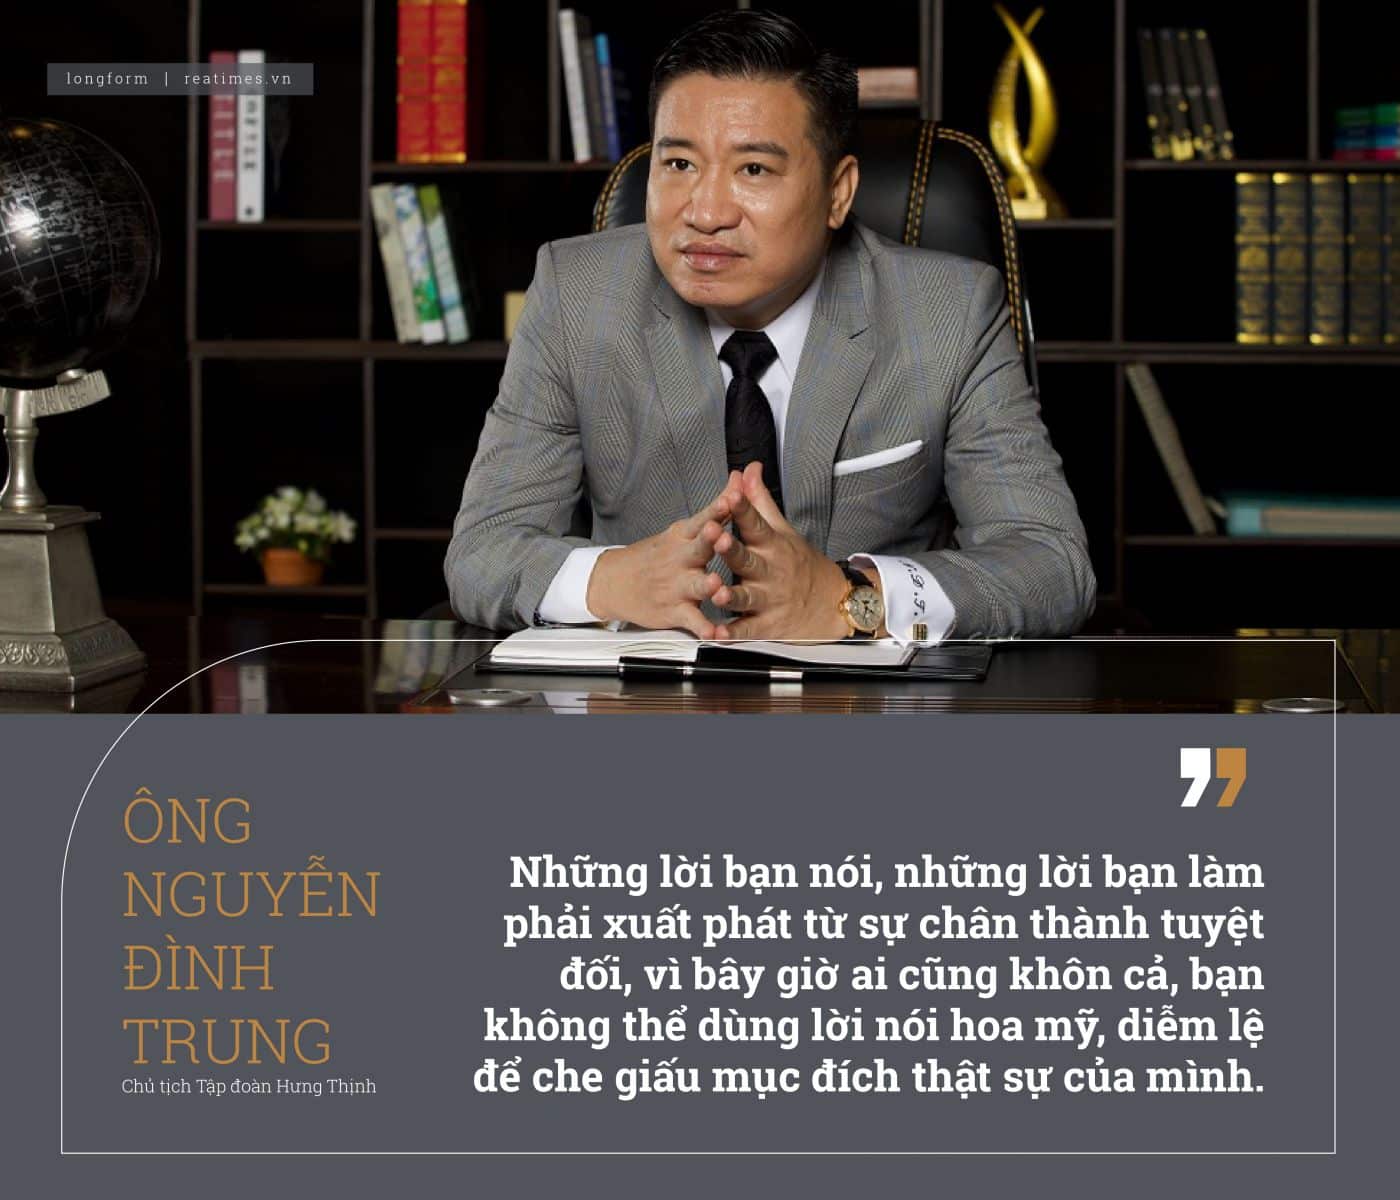 Chủ tịch Nguyễn Đình Trung